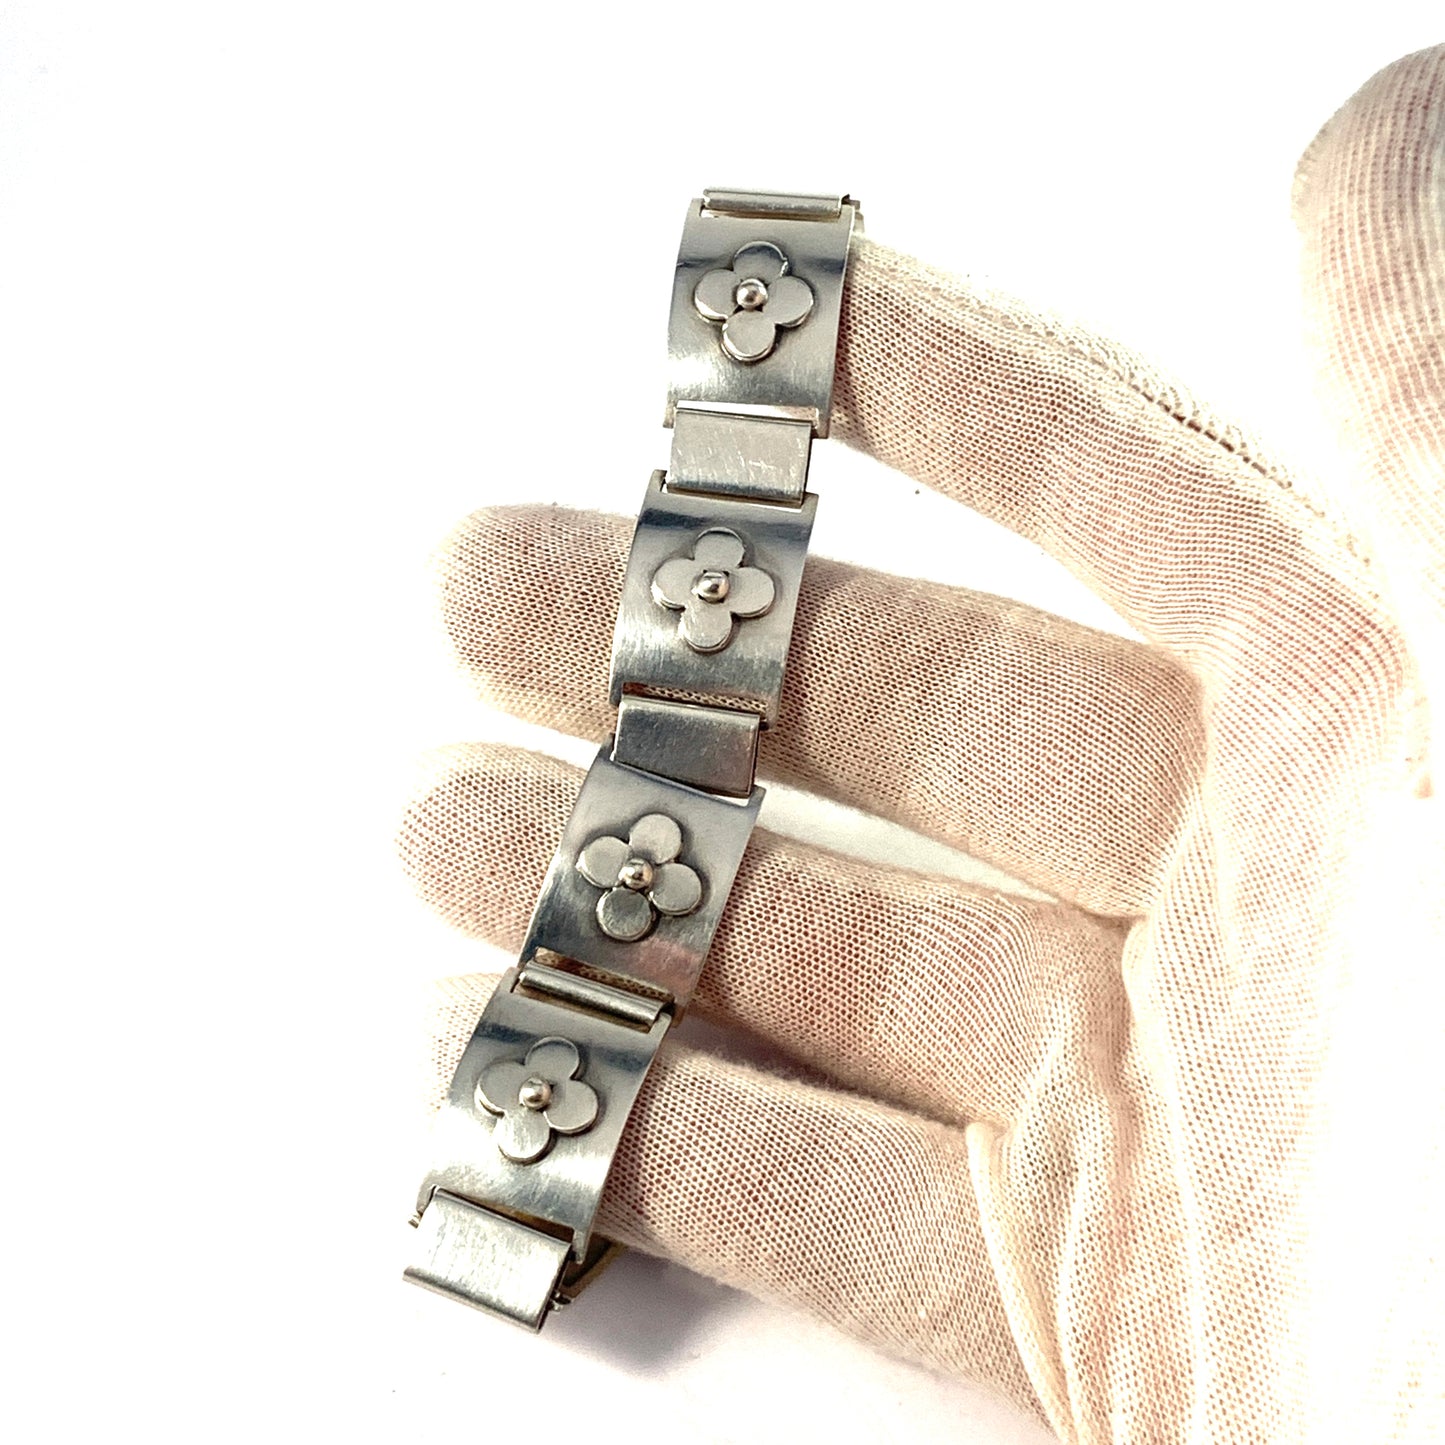 Munksgaard, Denmark 1970-73. Vintage Solid Silver Link Bracelet. Design no 319